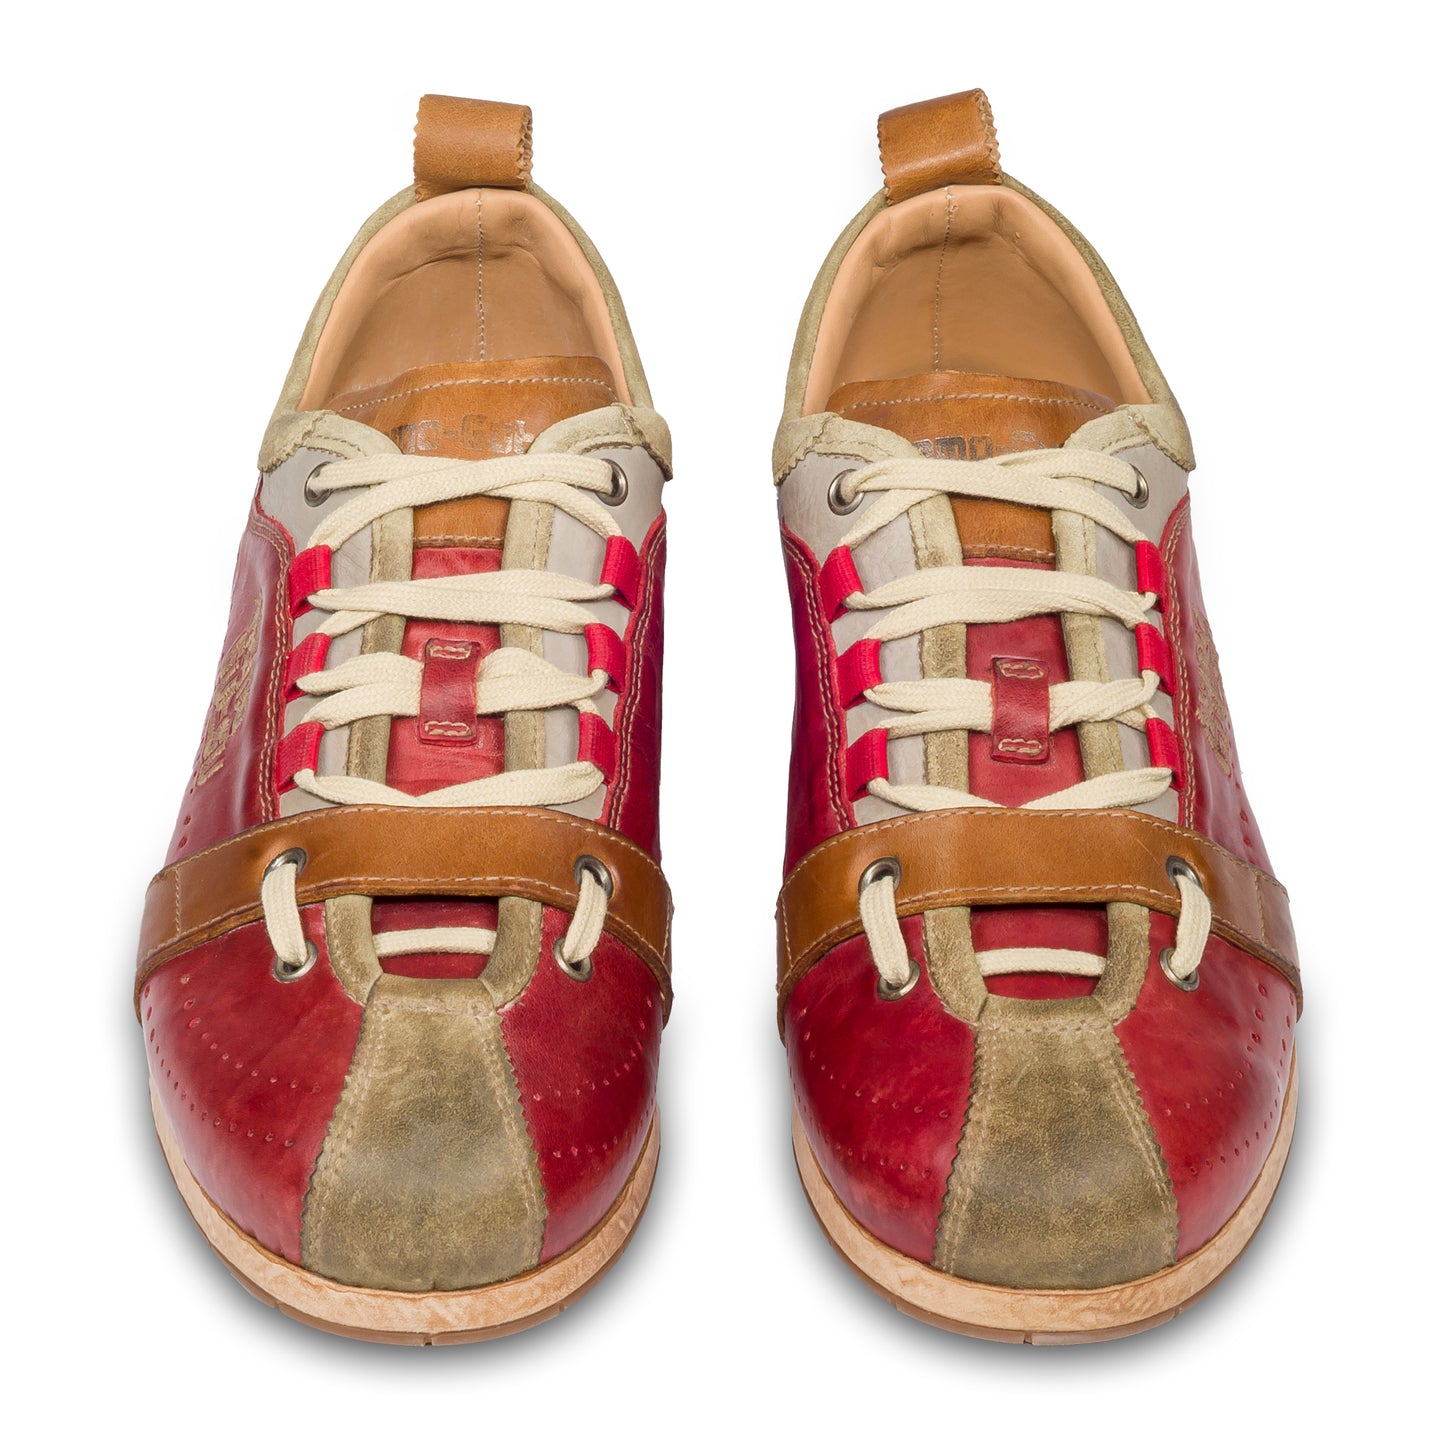 KAMO-GUTSU Herren Sneaker, rot/beige Retro-Optik, TIFO-017, paarweise Ansicht von vorne